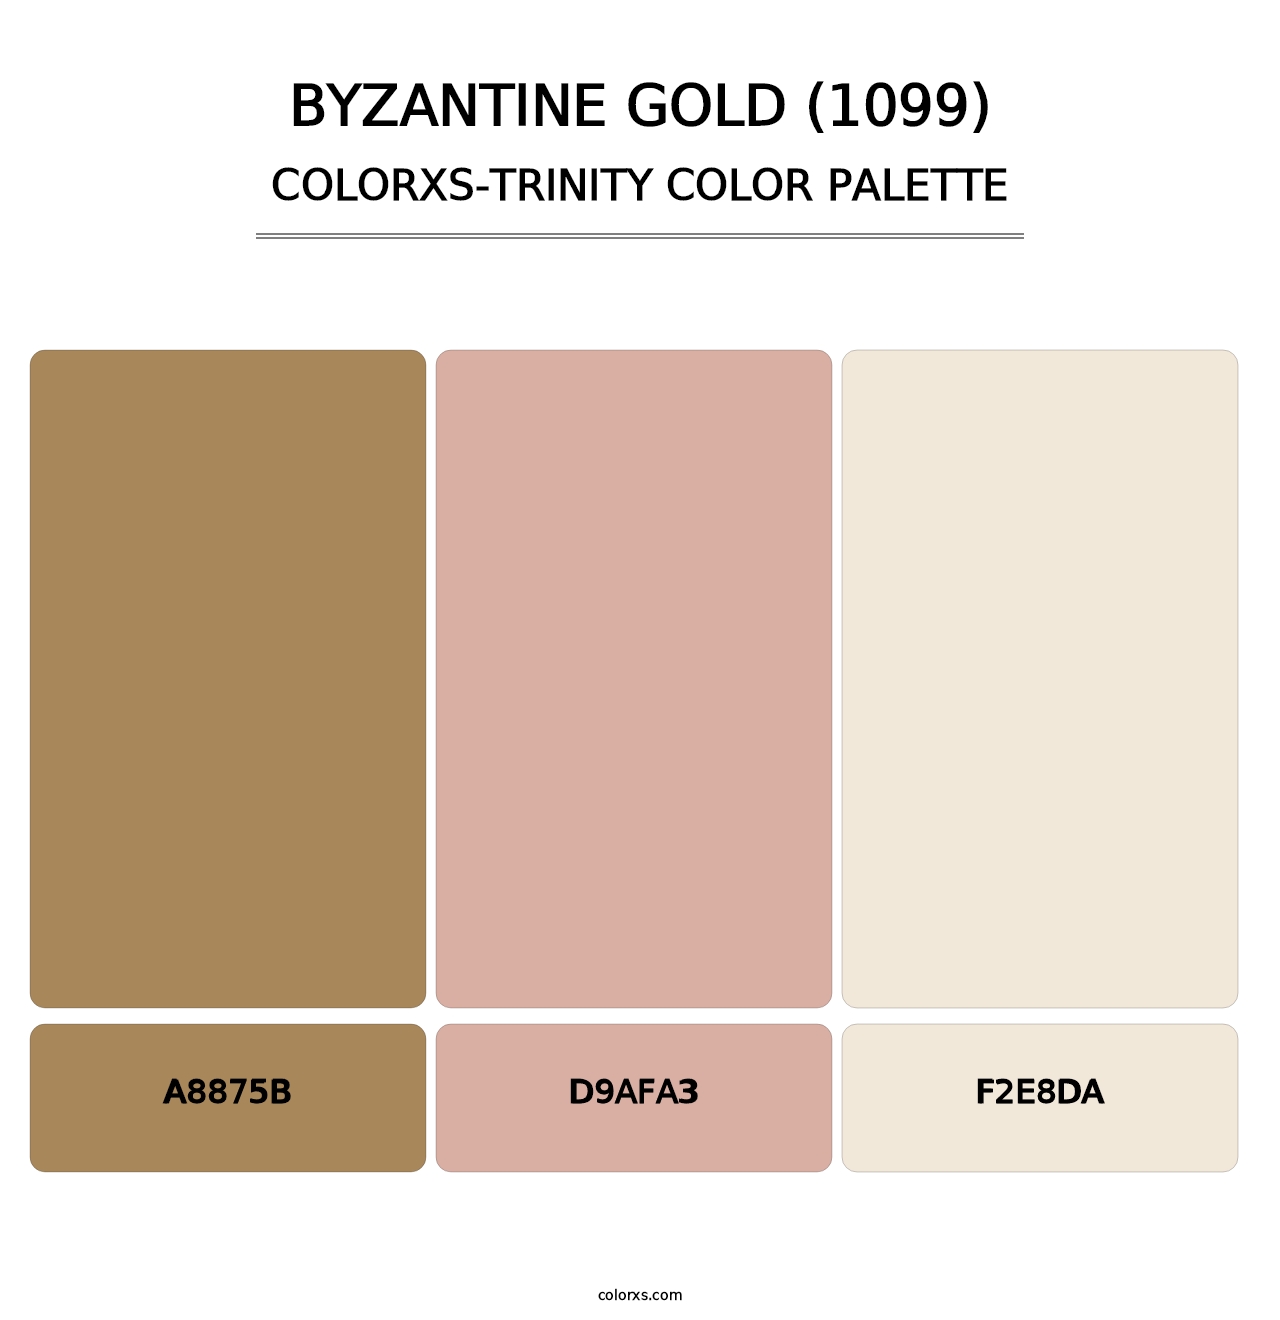 Byzantine Gold (1099) - Colorxs Trinity Palette